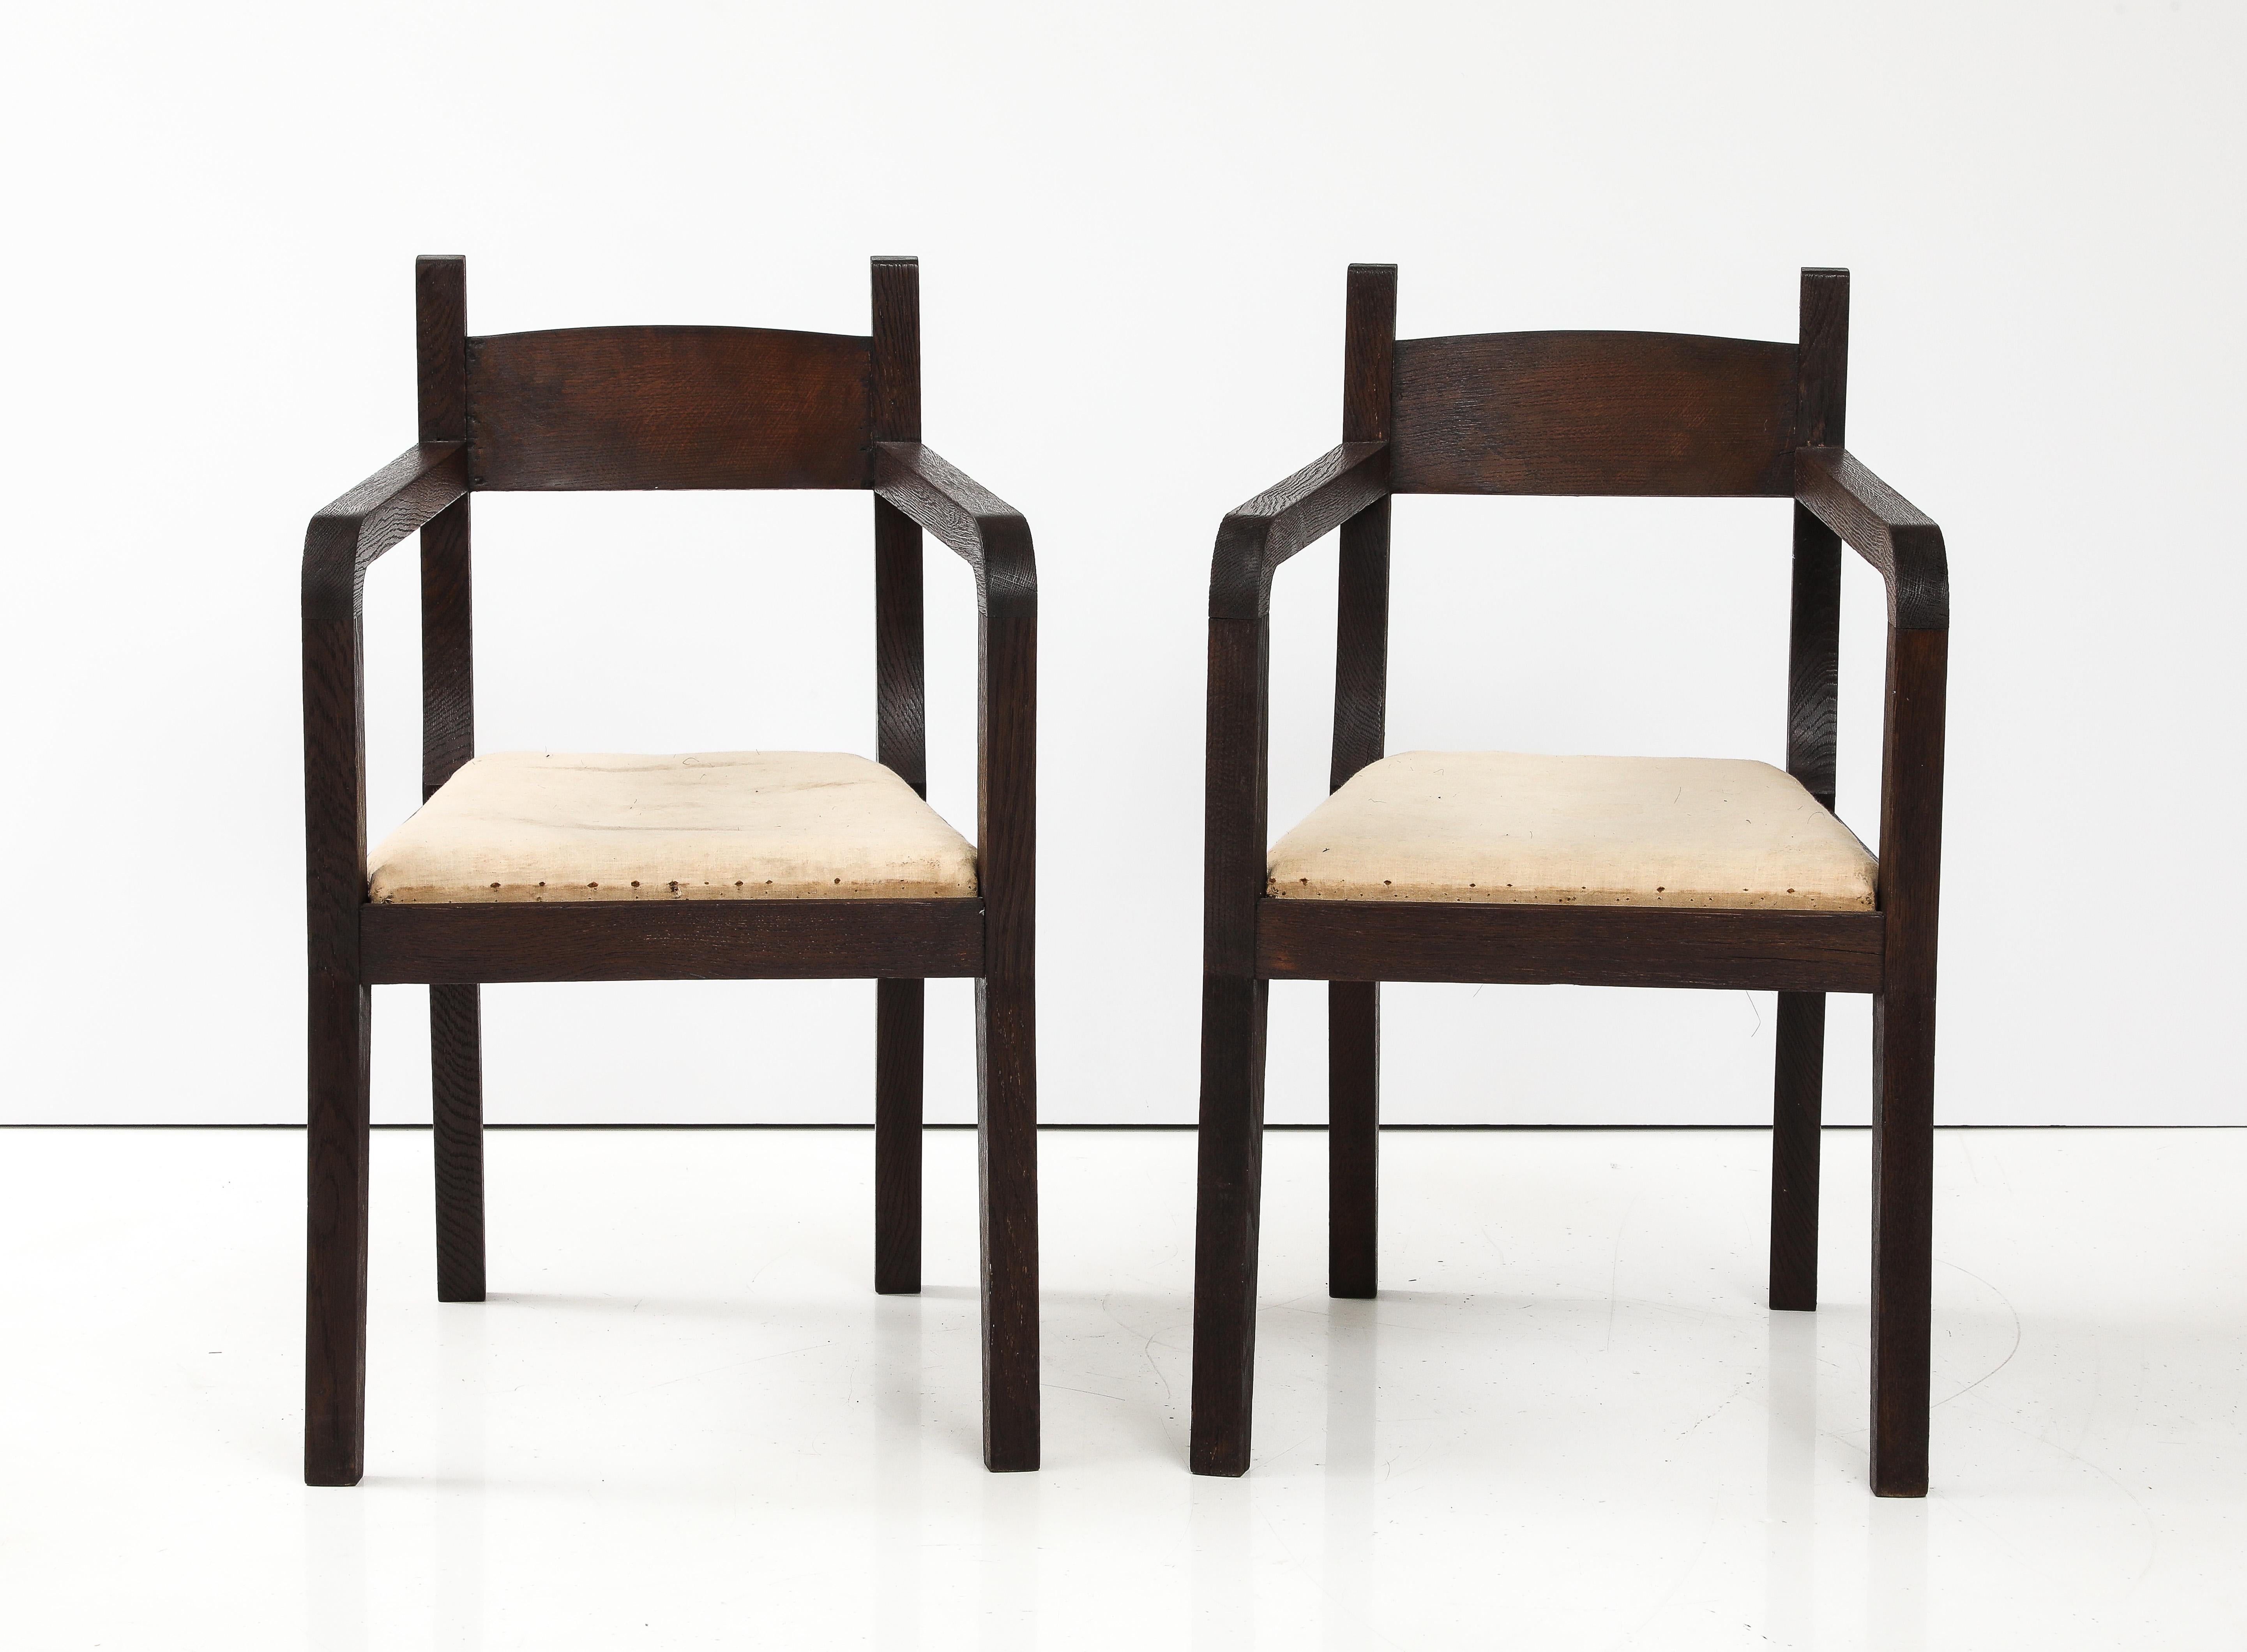 Paire de fauteuils modernistes français attribués à Eyre de Lanux, France, c.C. 1925
Chêne brossé, en mousseline

H : 33.25 D : 20.75 L : 20 po.